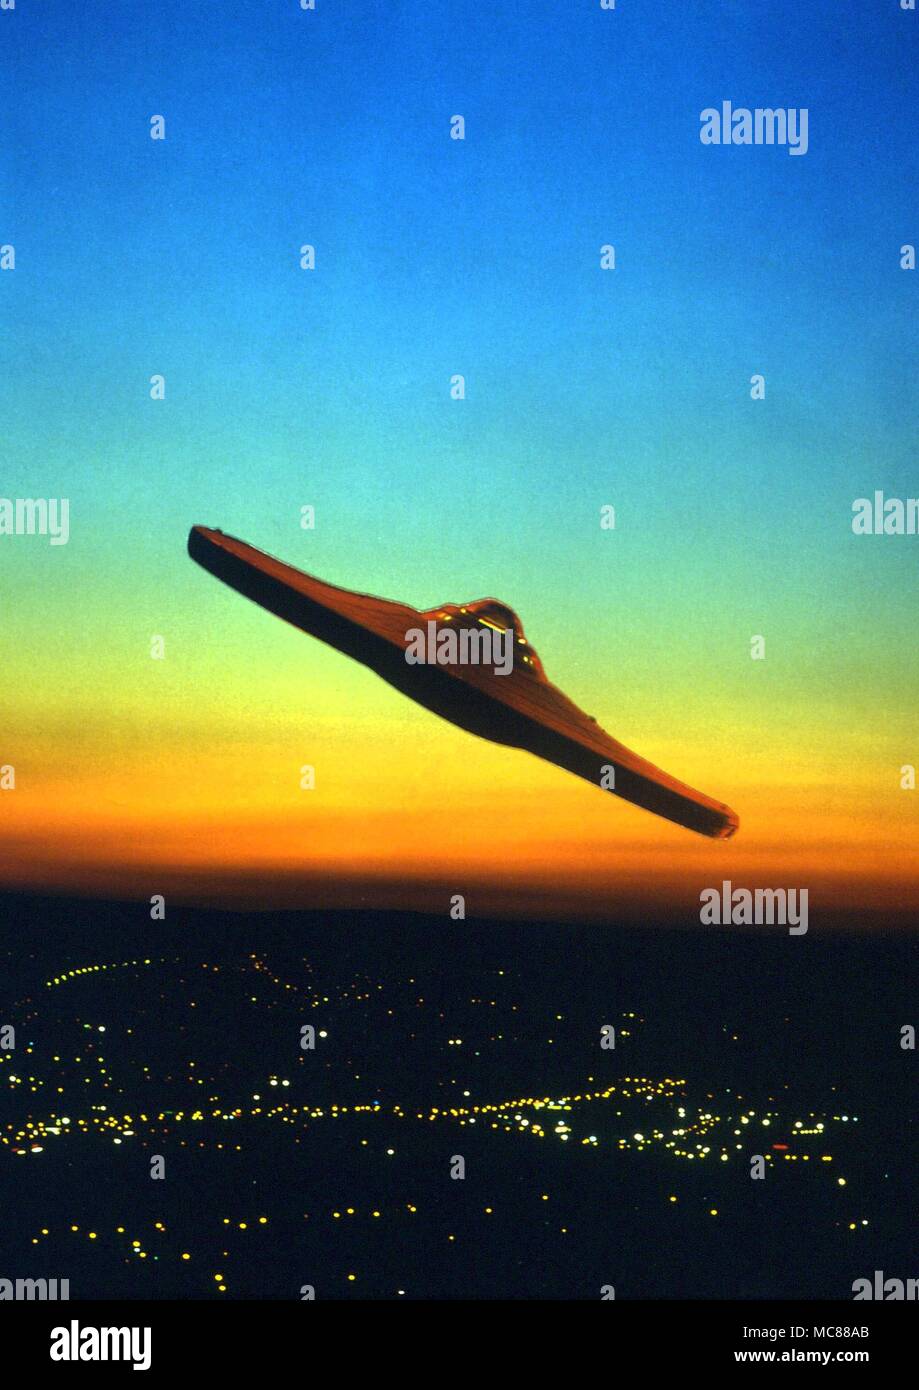 Ovni - objet volant non identifié survolant un paysage urbain de nuit photomontage. Banque D'Images